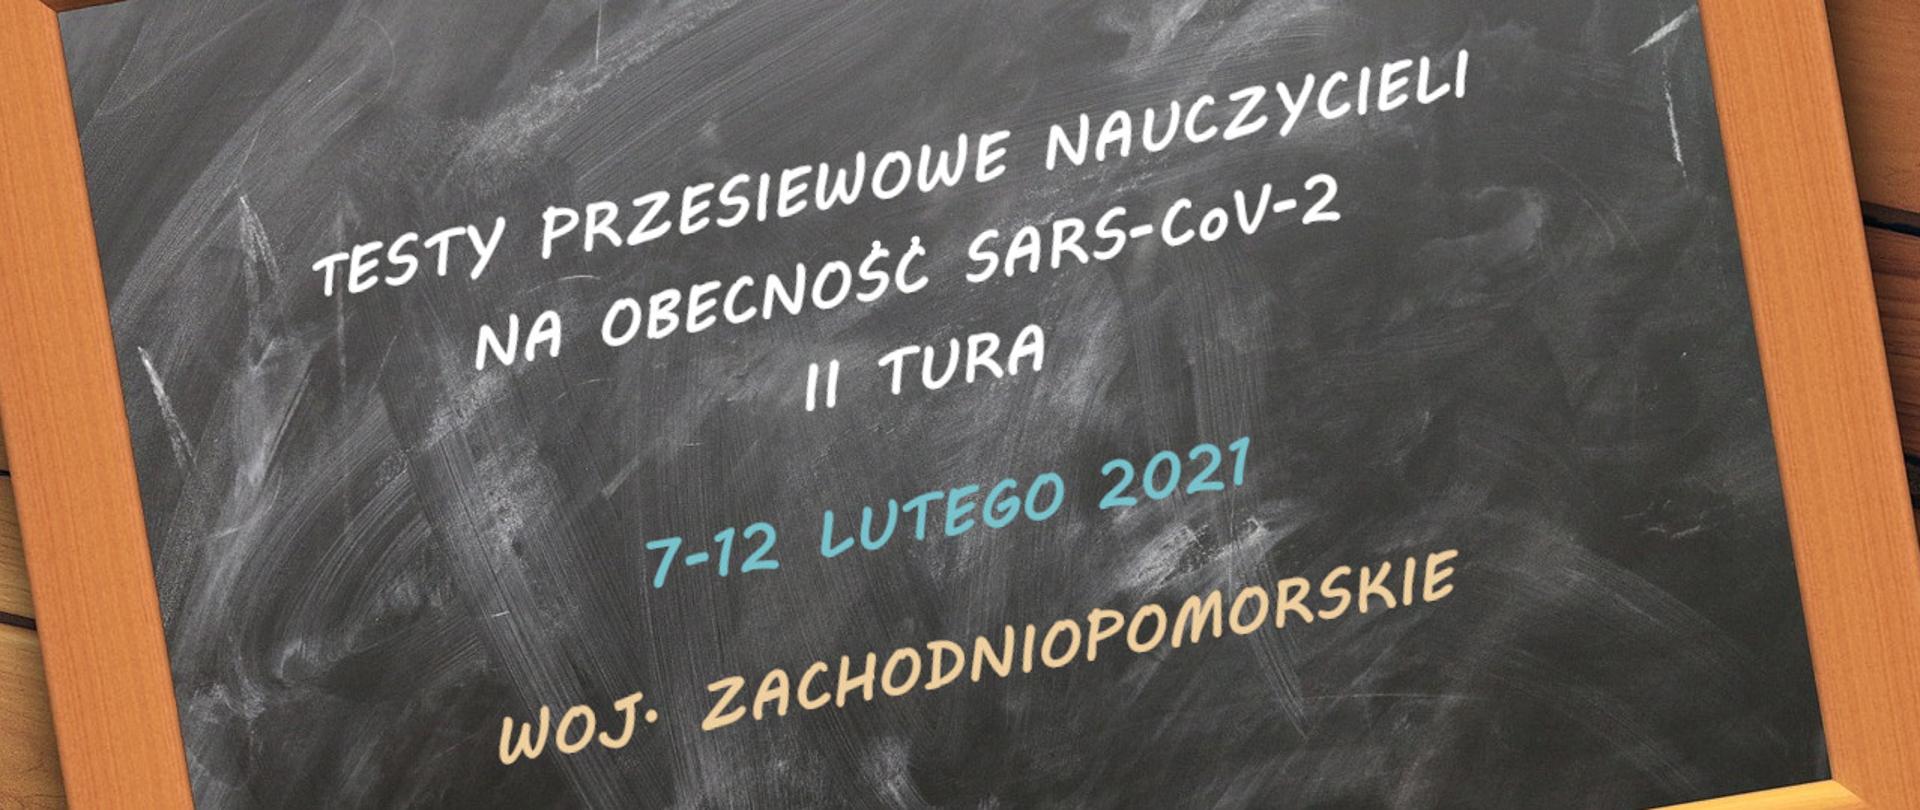 Na zdjęciu przechylona tablica z napisami: Testy przesiewowe nauczycieli na obecność SARS-CoV-2 II tura / 7-12 lutego 2021 / woj. zachodniopomorskie